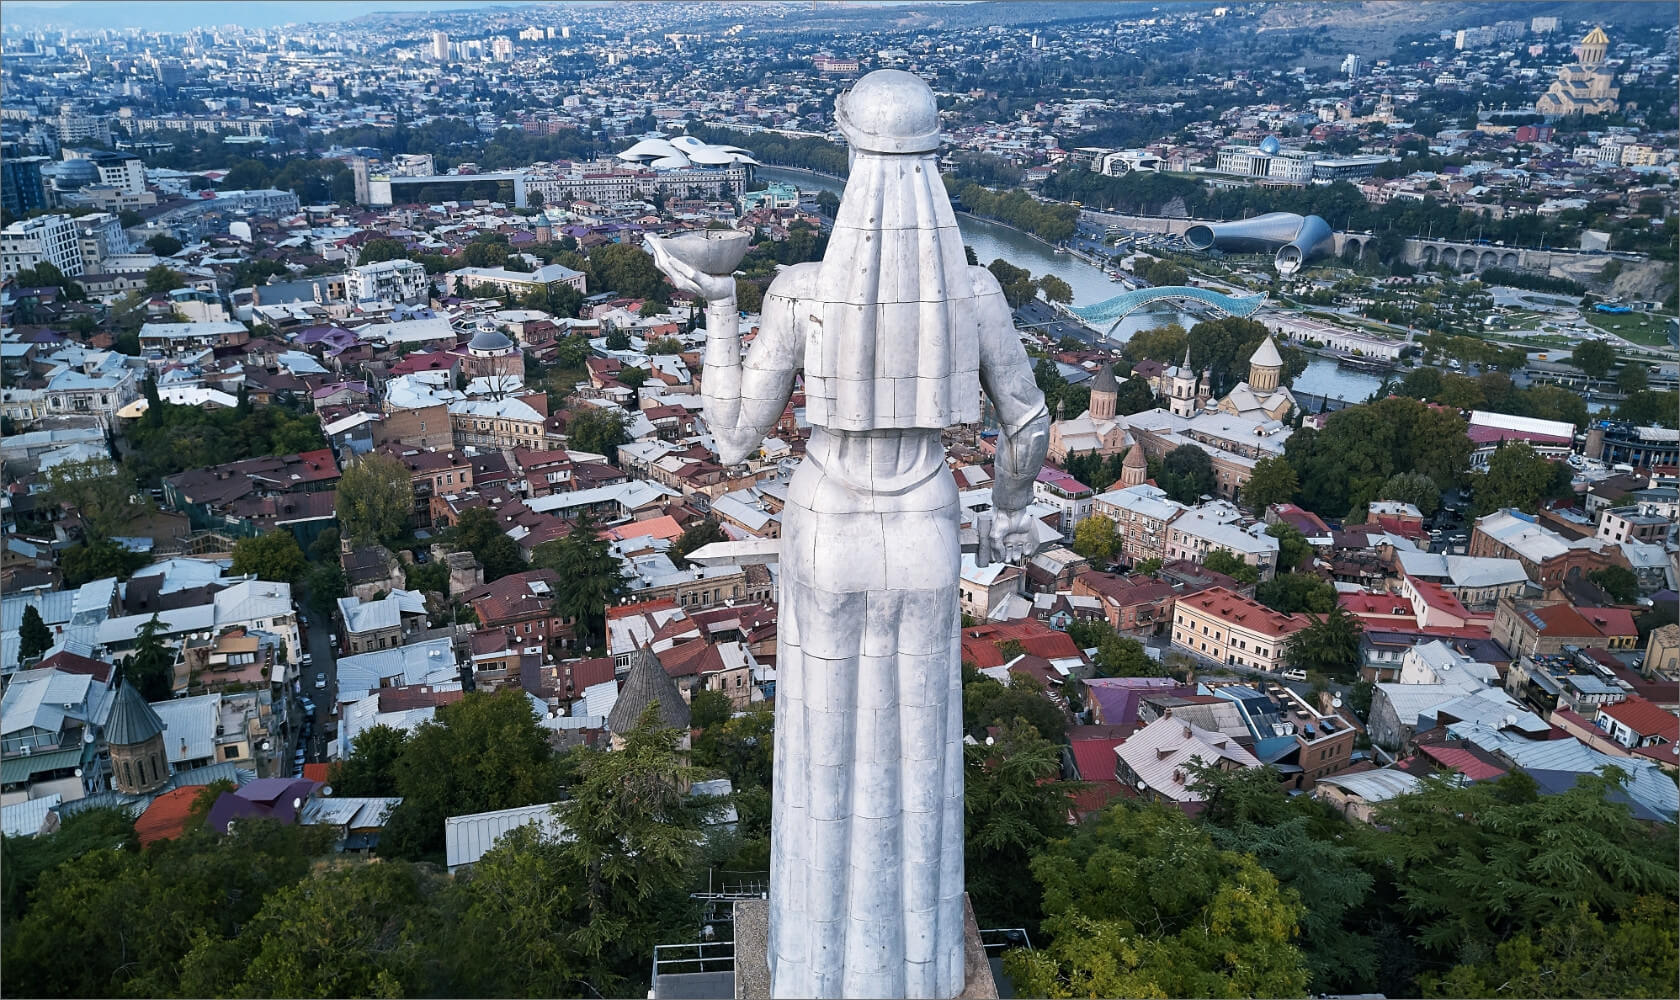 مجسمه مادر گرجستان